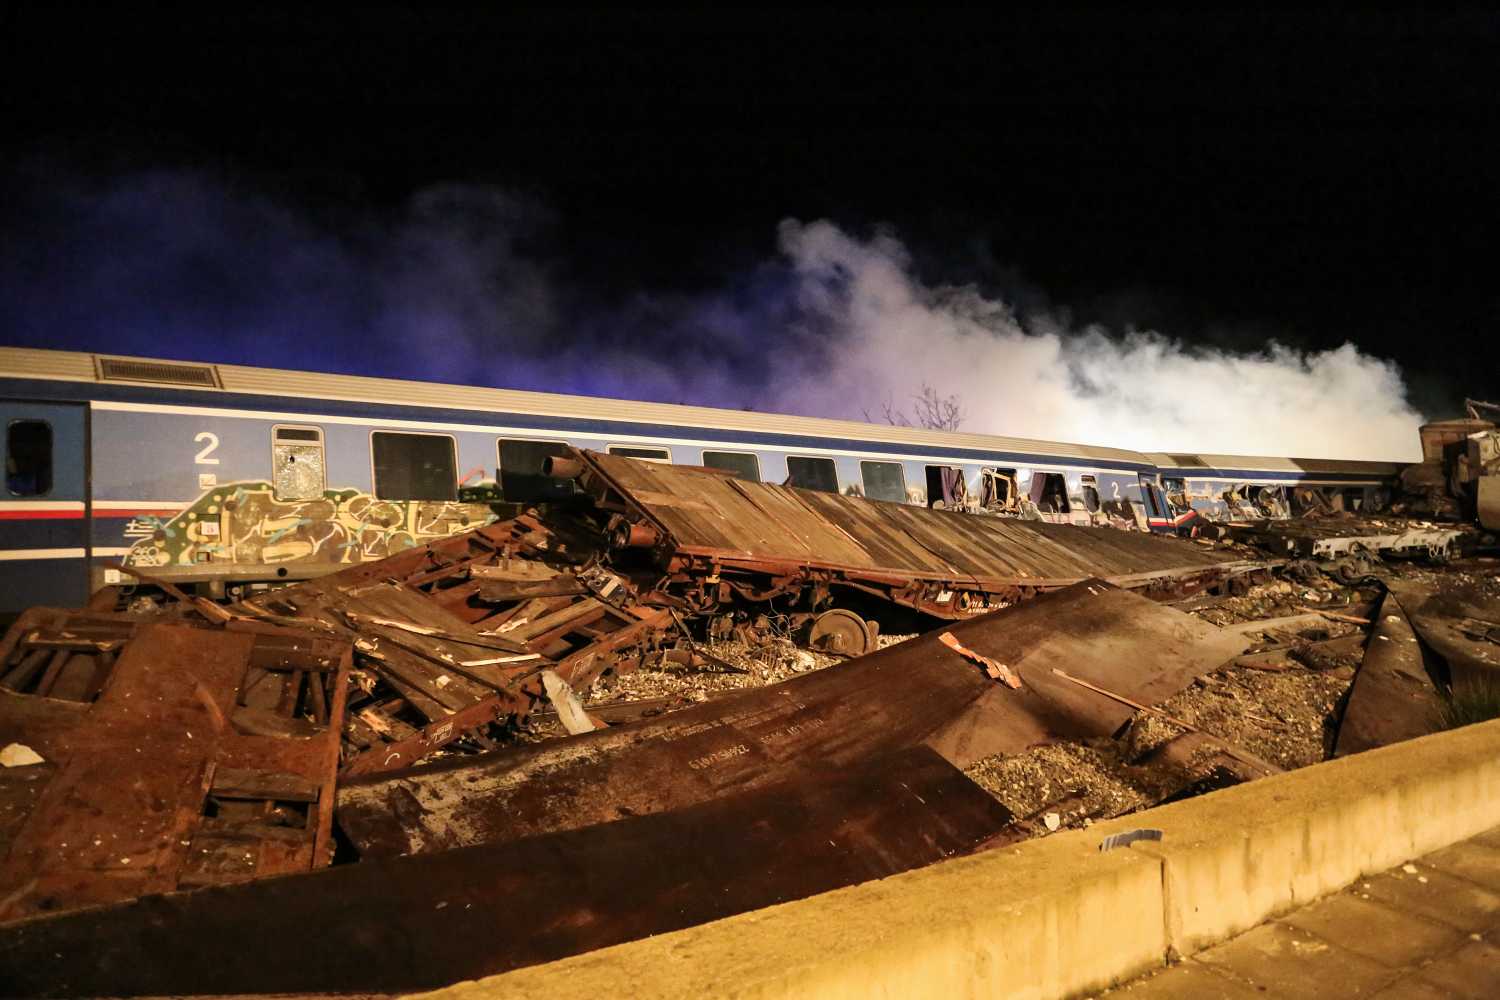 Τέμπη: «Το τρένο είχε βλάβη από πριν, γιατί τους επιβίβασαν;» καταγγέλλουν συγγενείς επιβατών